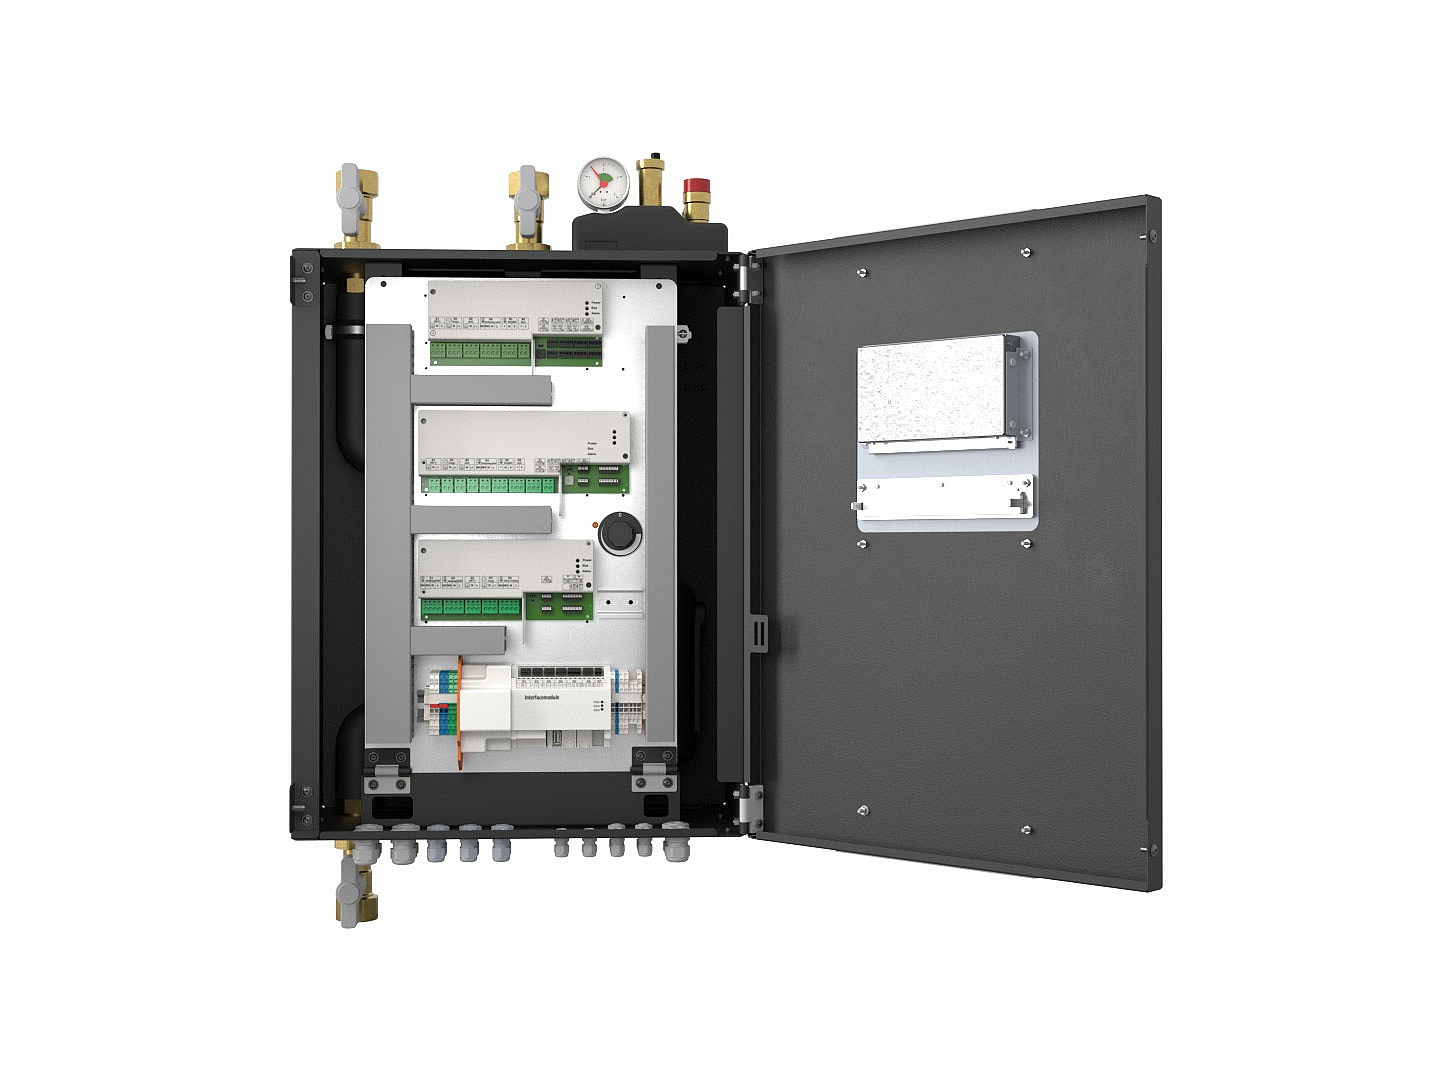 Die Hydrobox pro ist die zentrale Regel- und Steuereinheit für die Bereitstellung und Verteilung von Wärmeenergie im Heizungssystem.